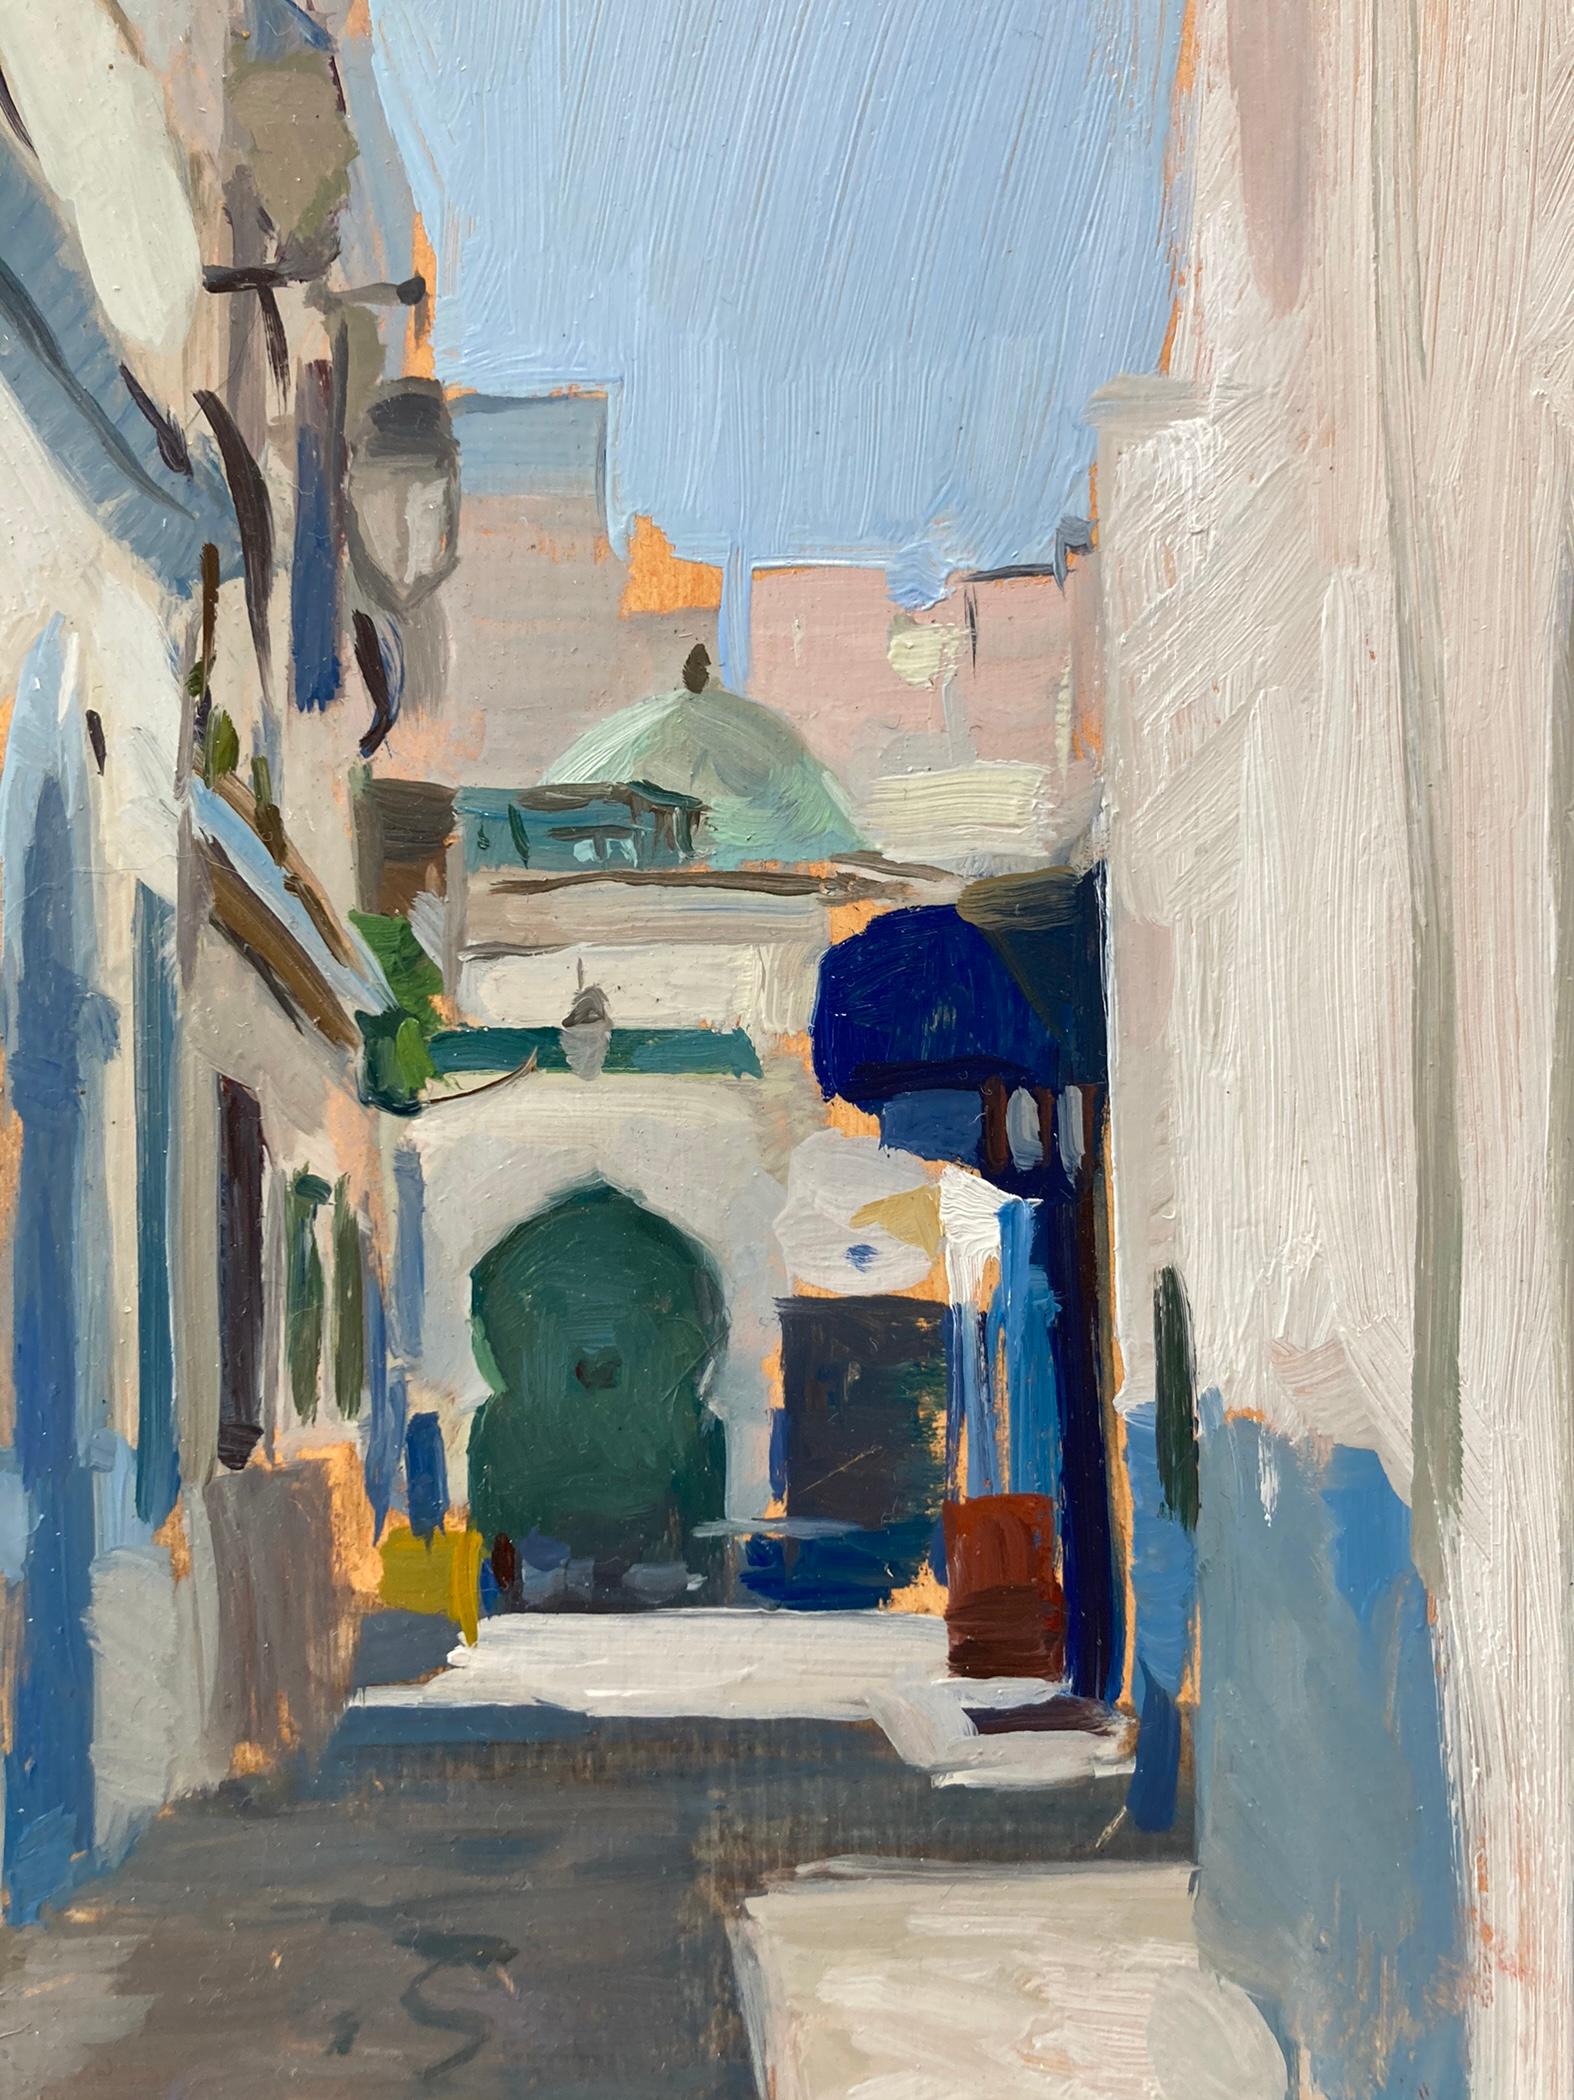 Dalessio dépeint un couloir d'Assilah, au Maroc, dans cette peinture de plein air. La peinture des bâtiments reflète la couleur du ciel d'un bleu éclatant. Le style de l'immeuble au bout de la rue indique l'emplacement du tableau au Maroc. Dalessio,